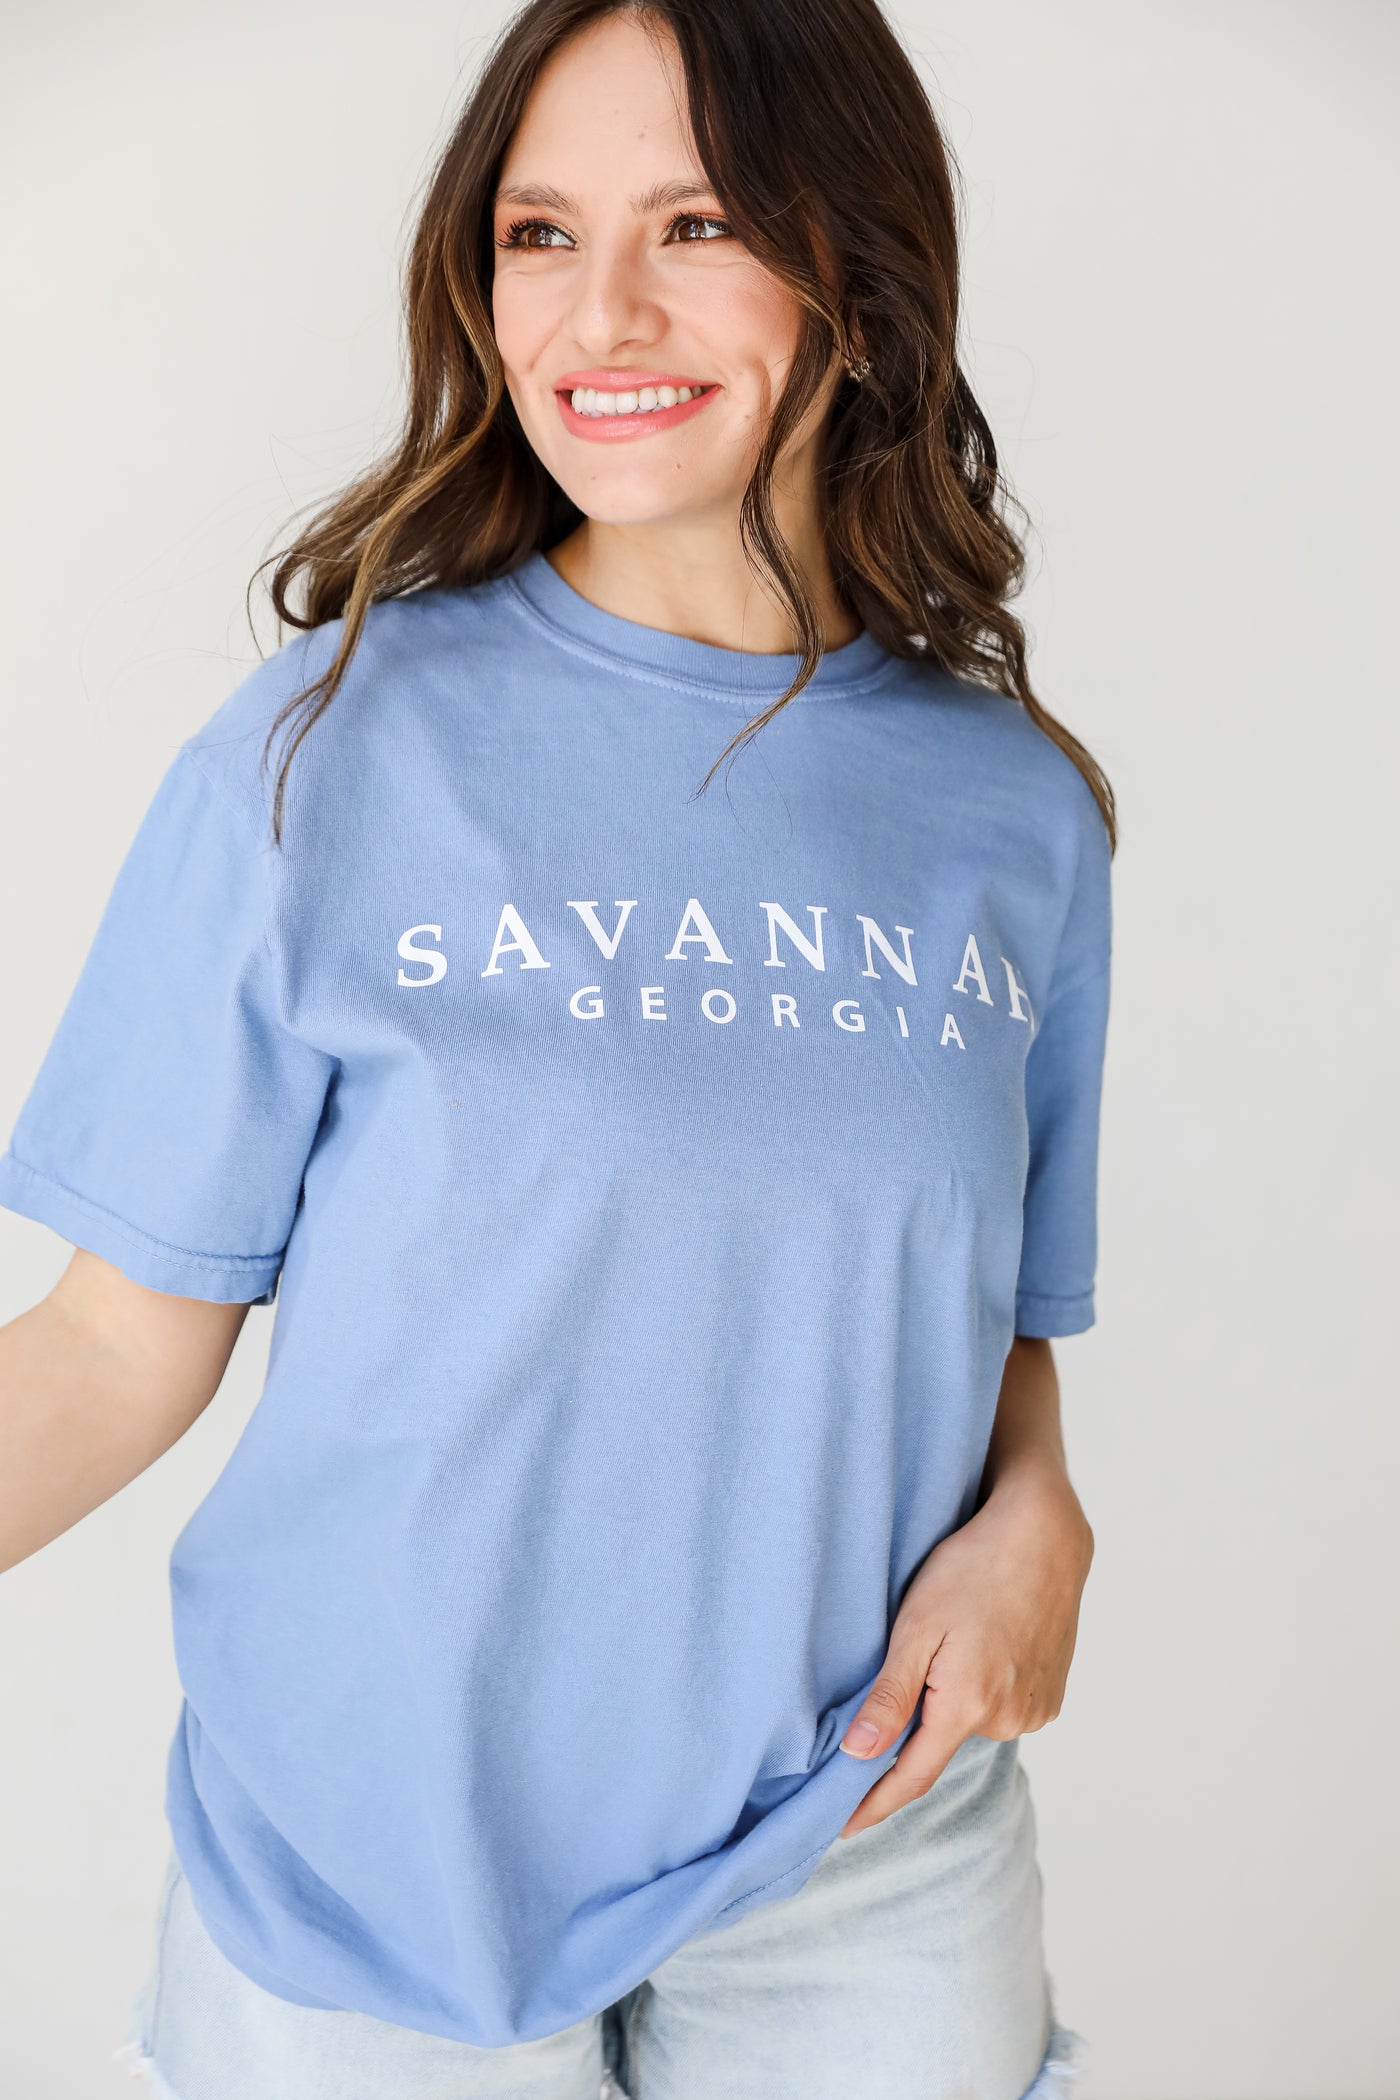 Blue Savannah Georgia Tee on model